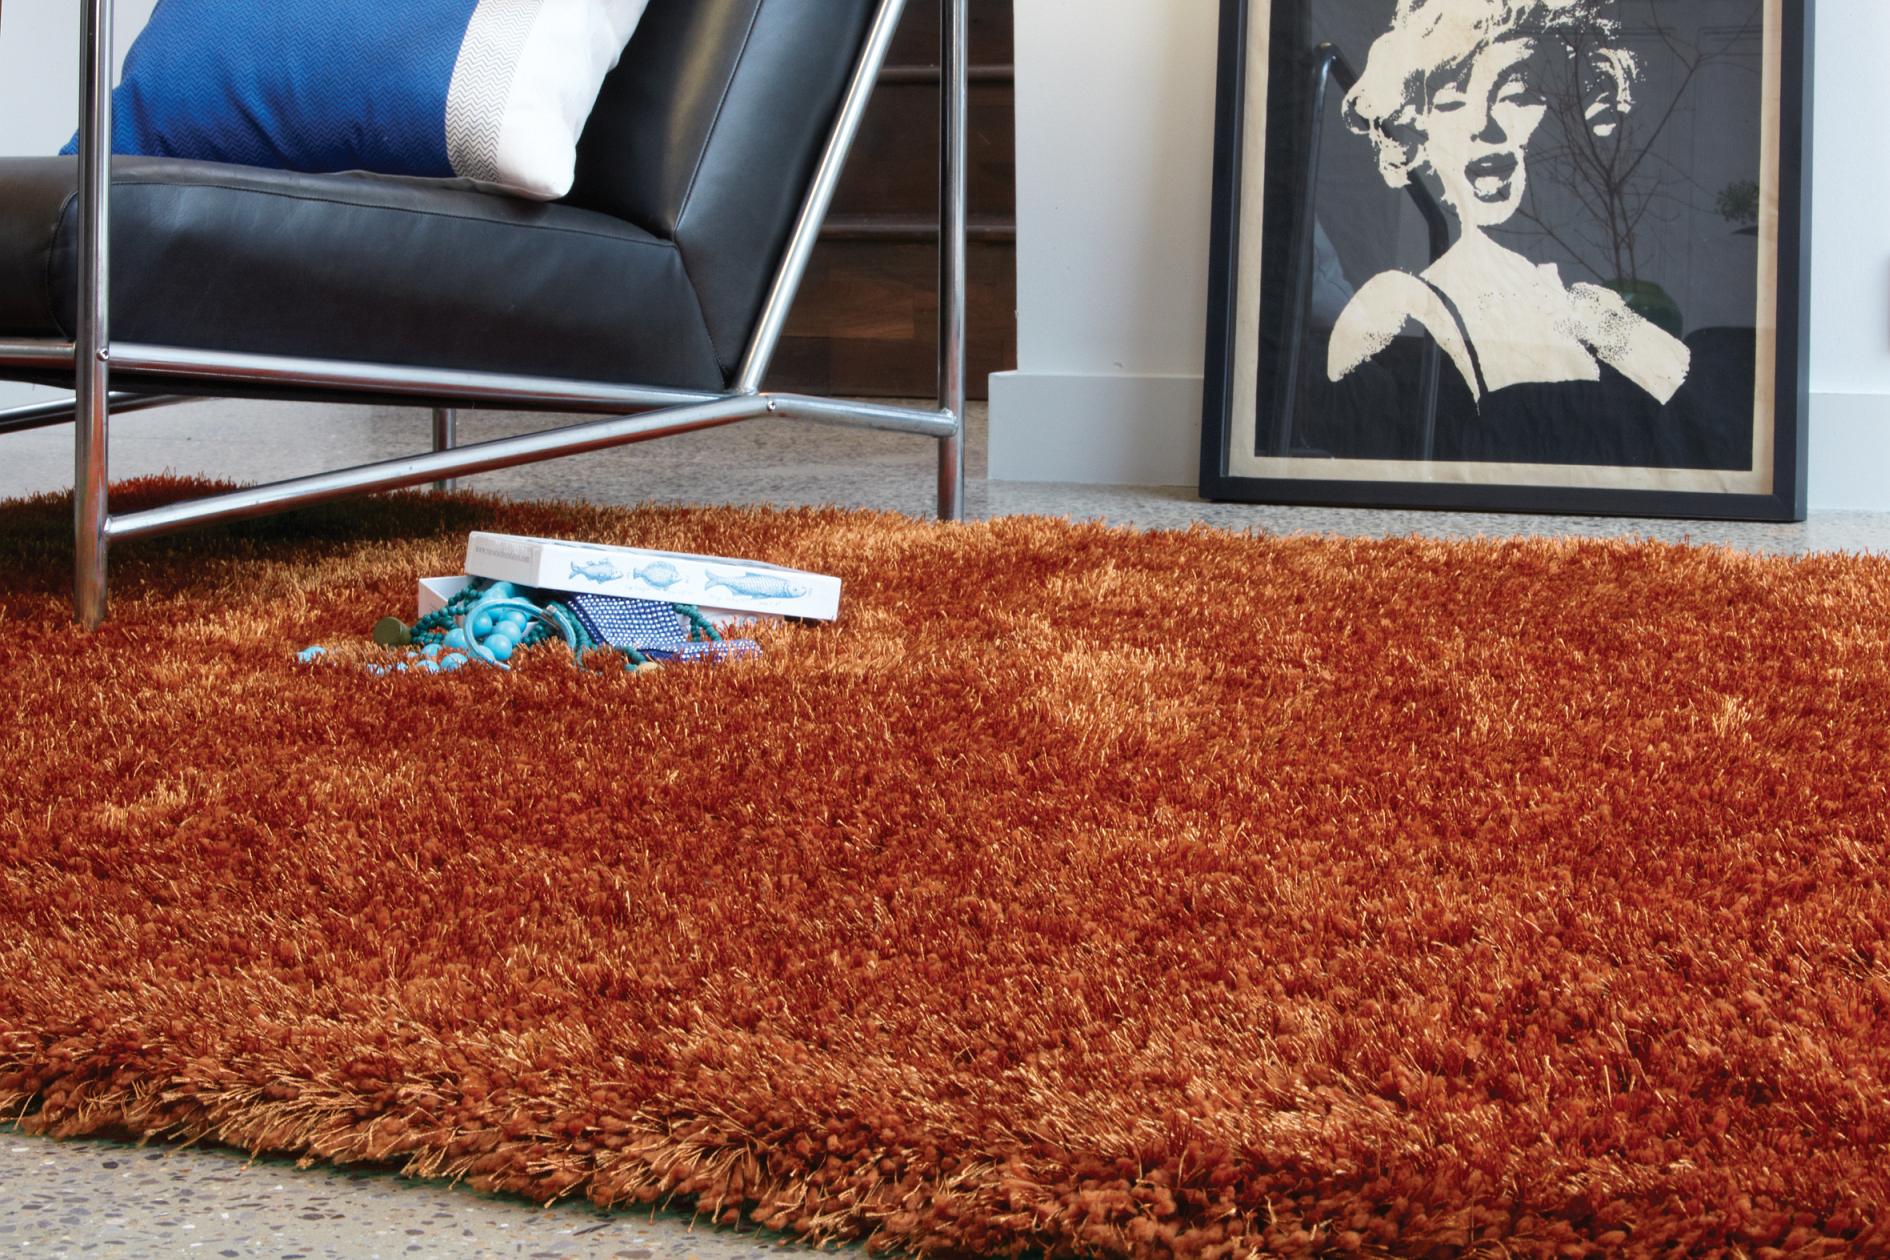 Hochflor Shaggy Teppich im modernen Wohnzimmer #wohnzimmerteppich ©KadimaDesign